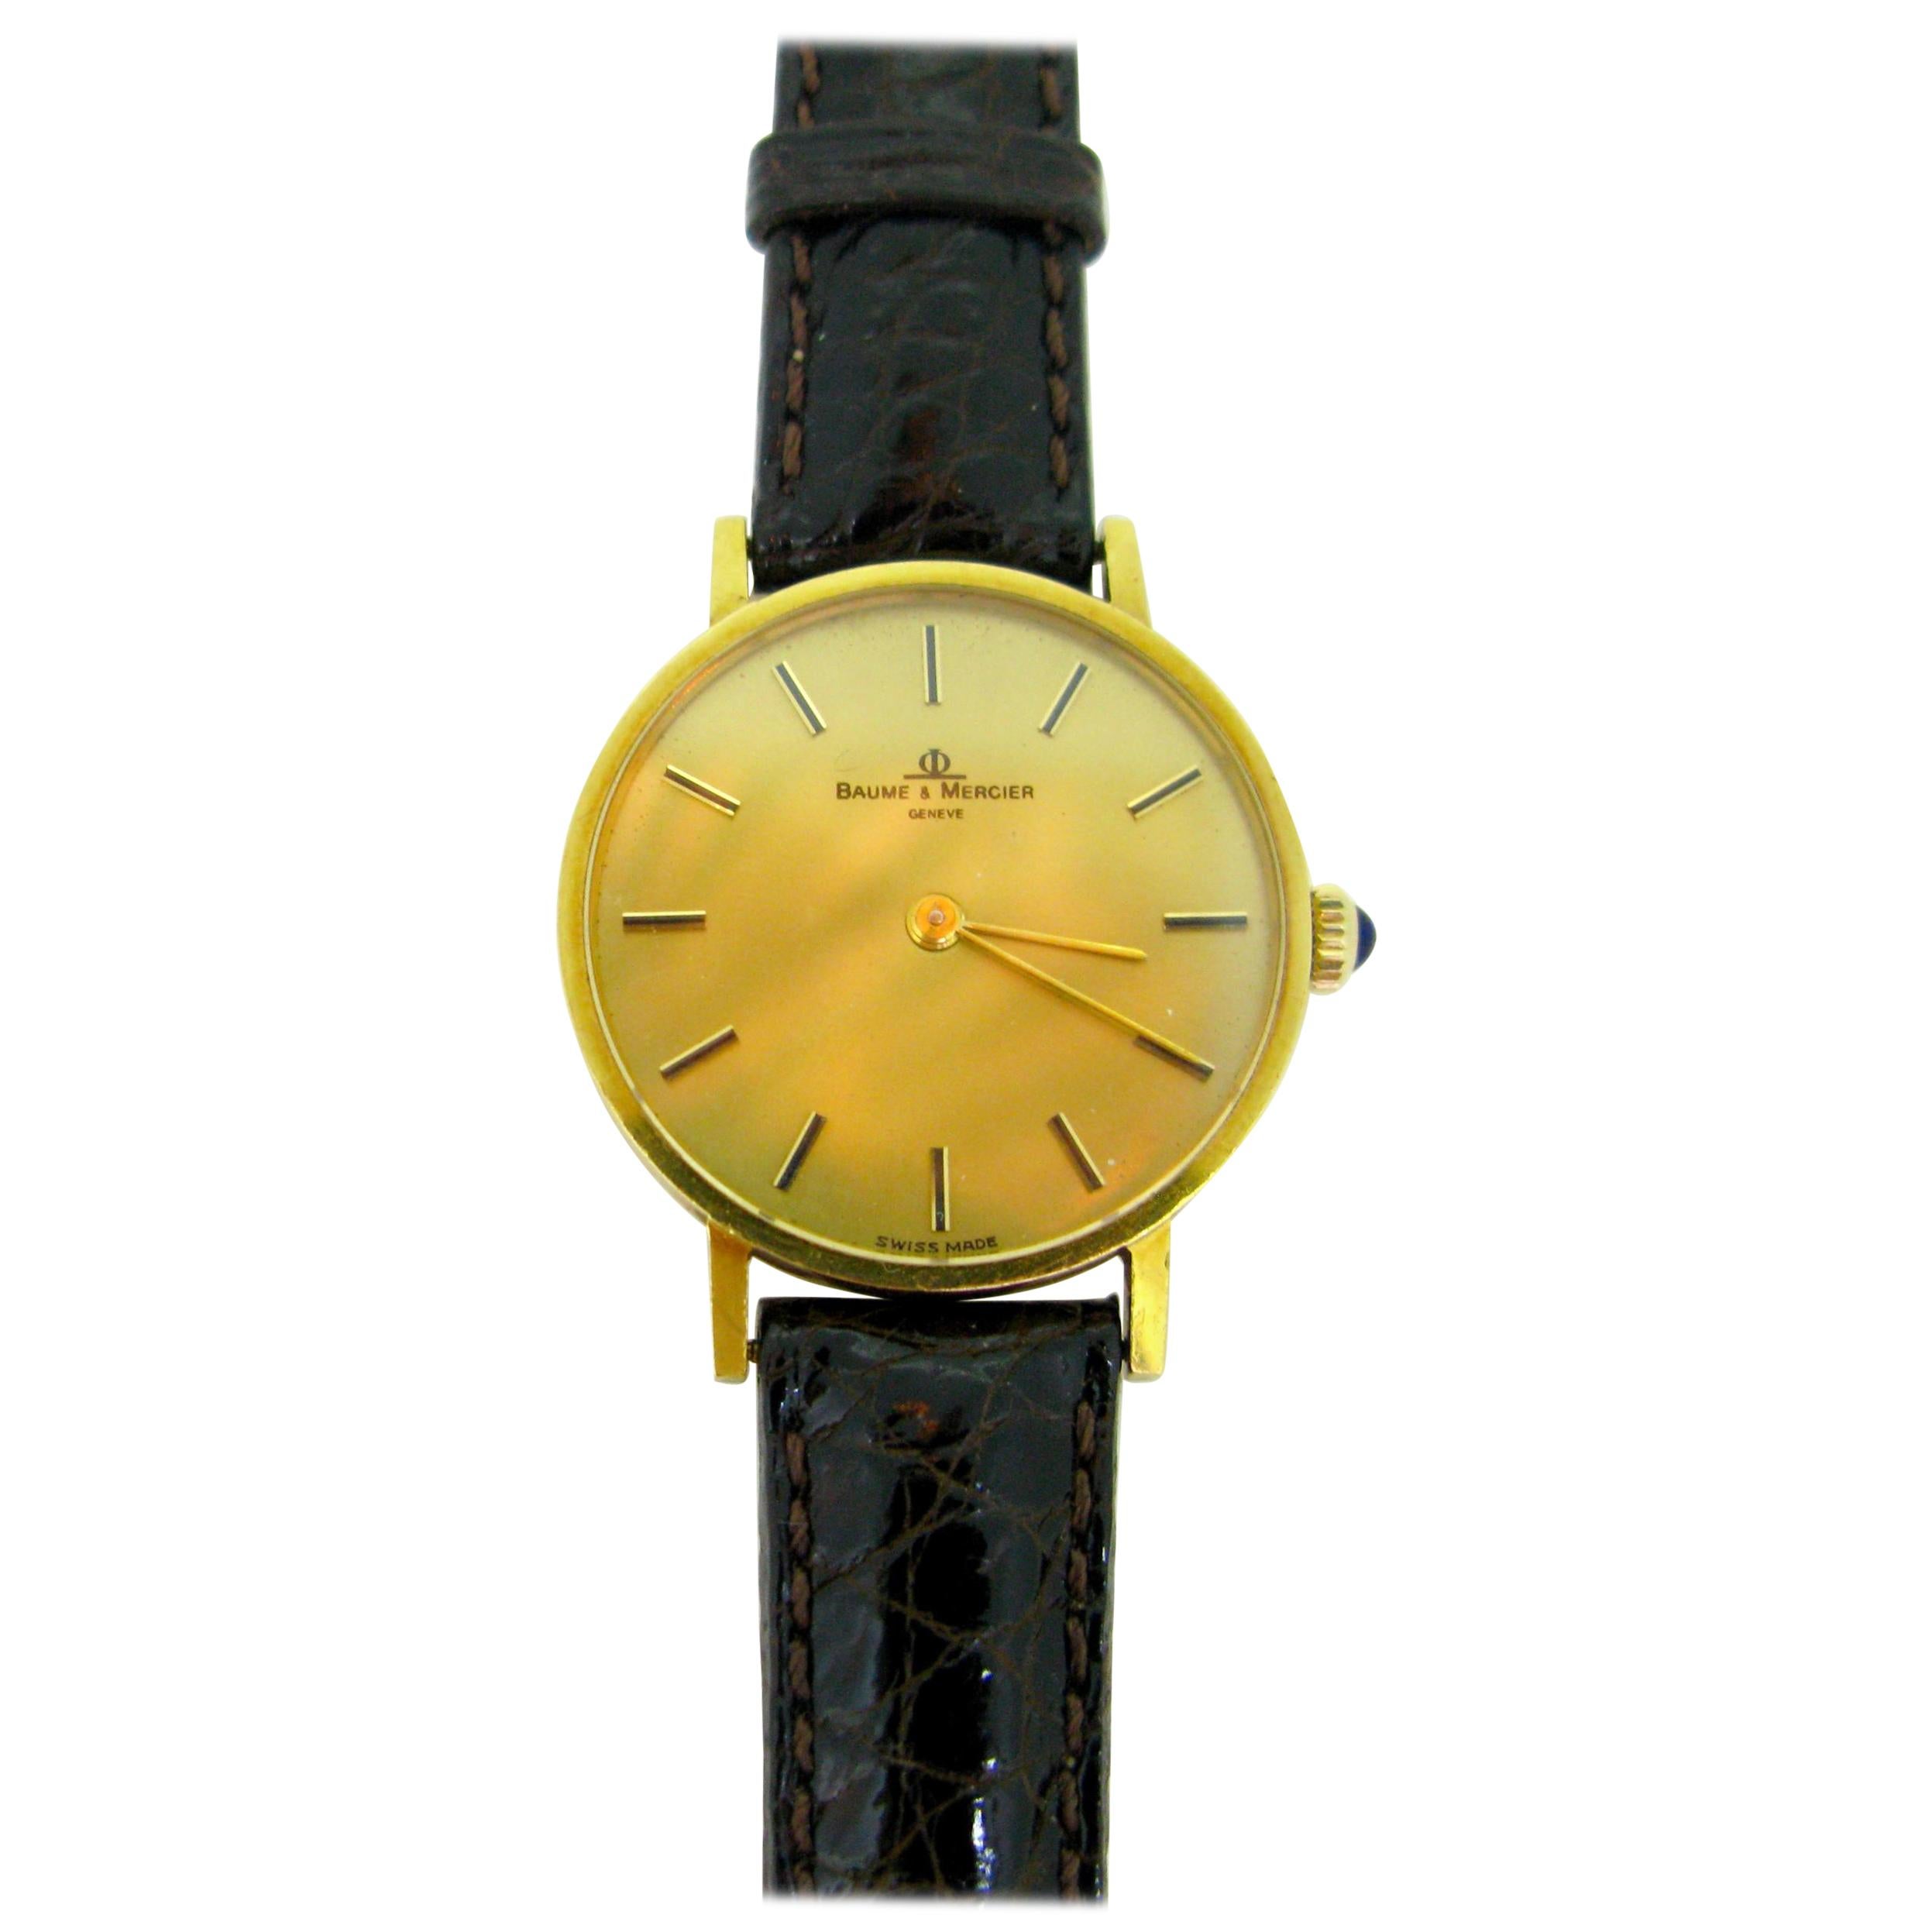 Baume & Mercier 35121 Montre-bracelet mécanique en or jaune